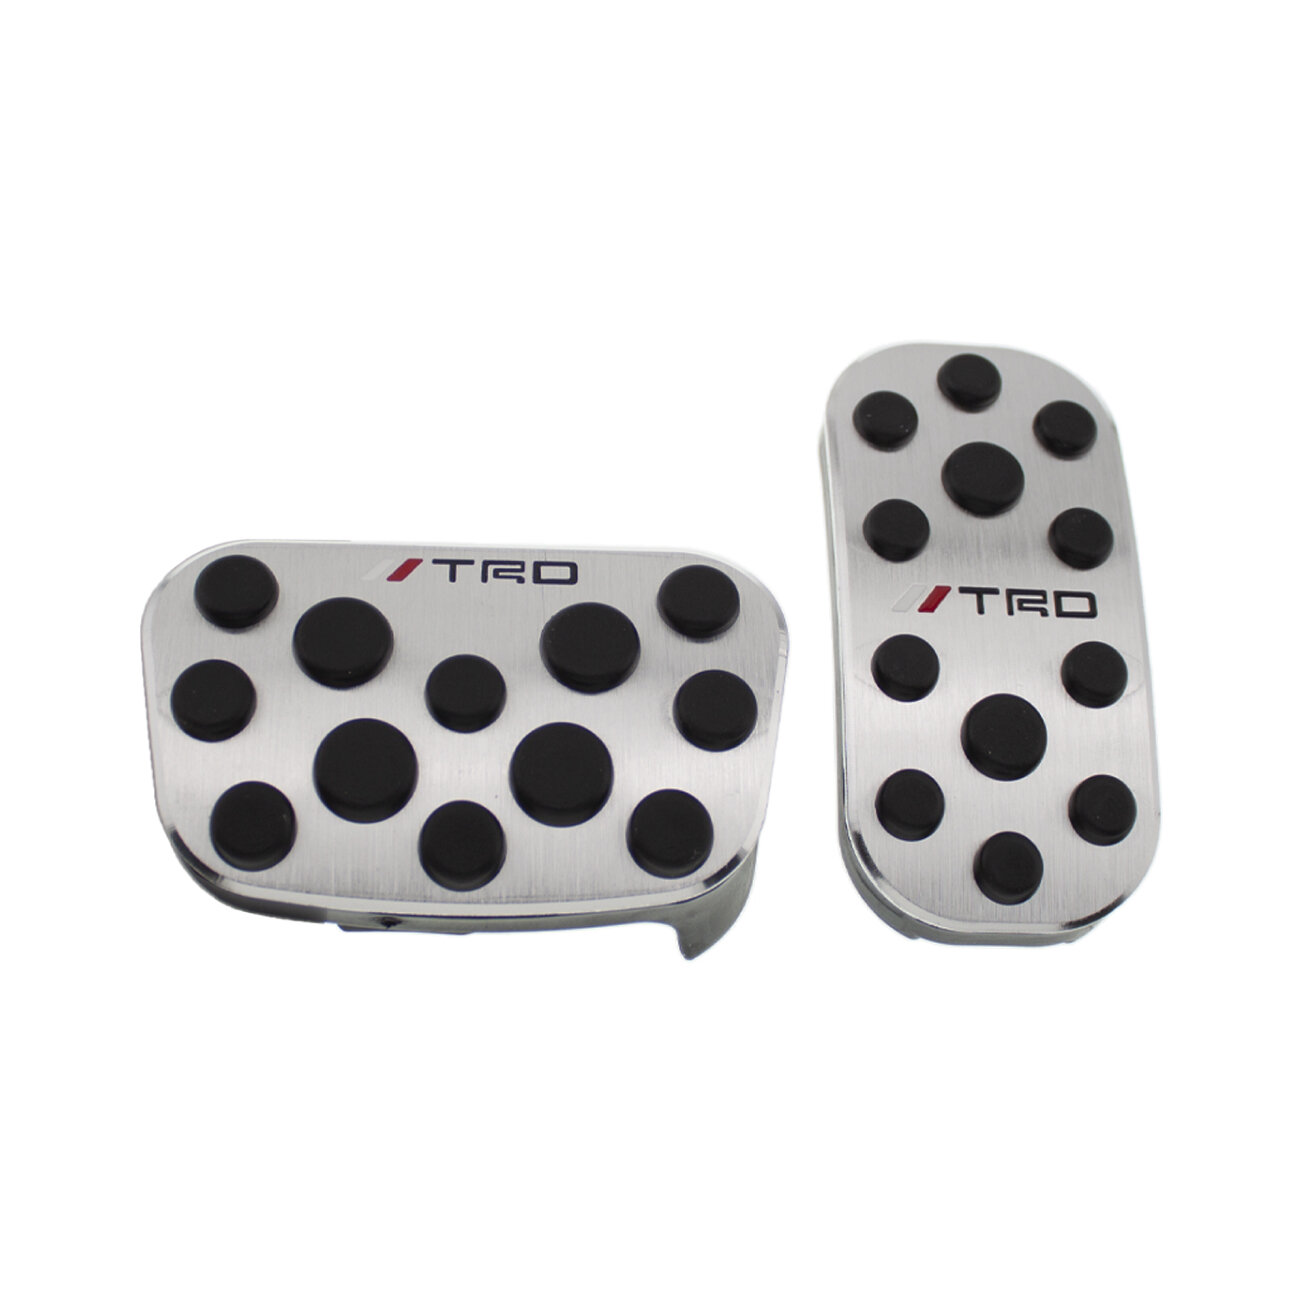 Накладки на педали для Toyota TRD без сверления 2 шт